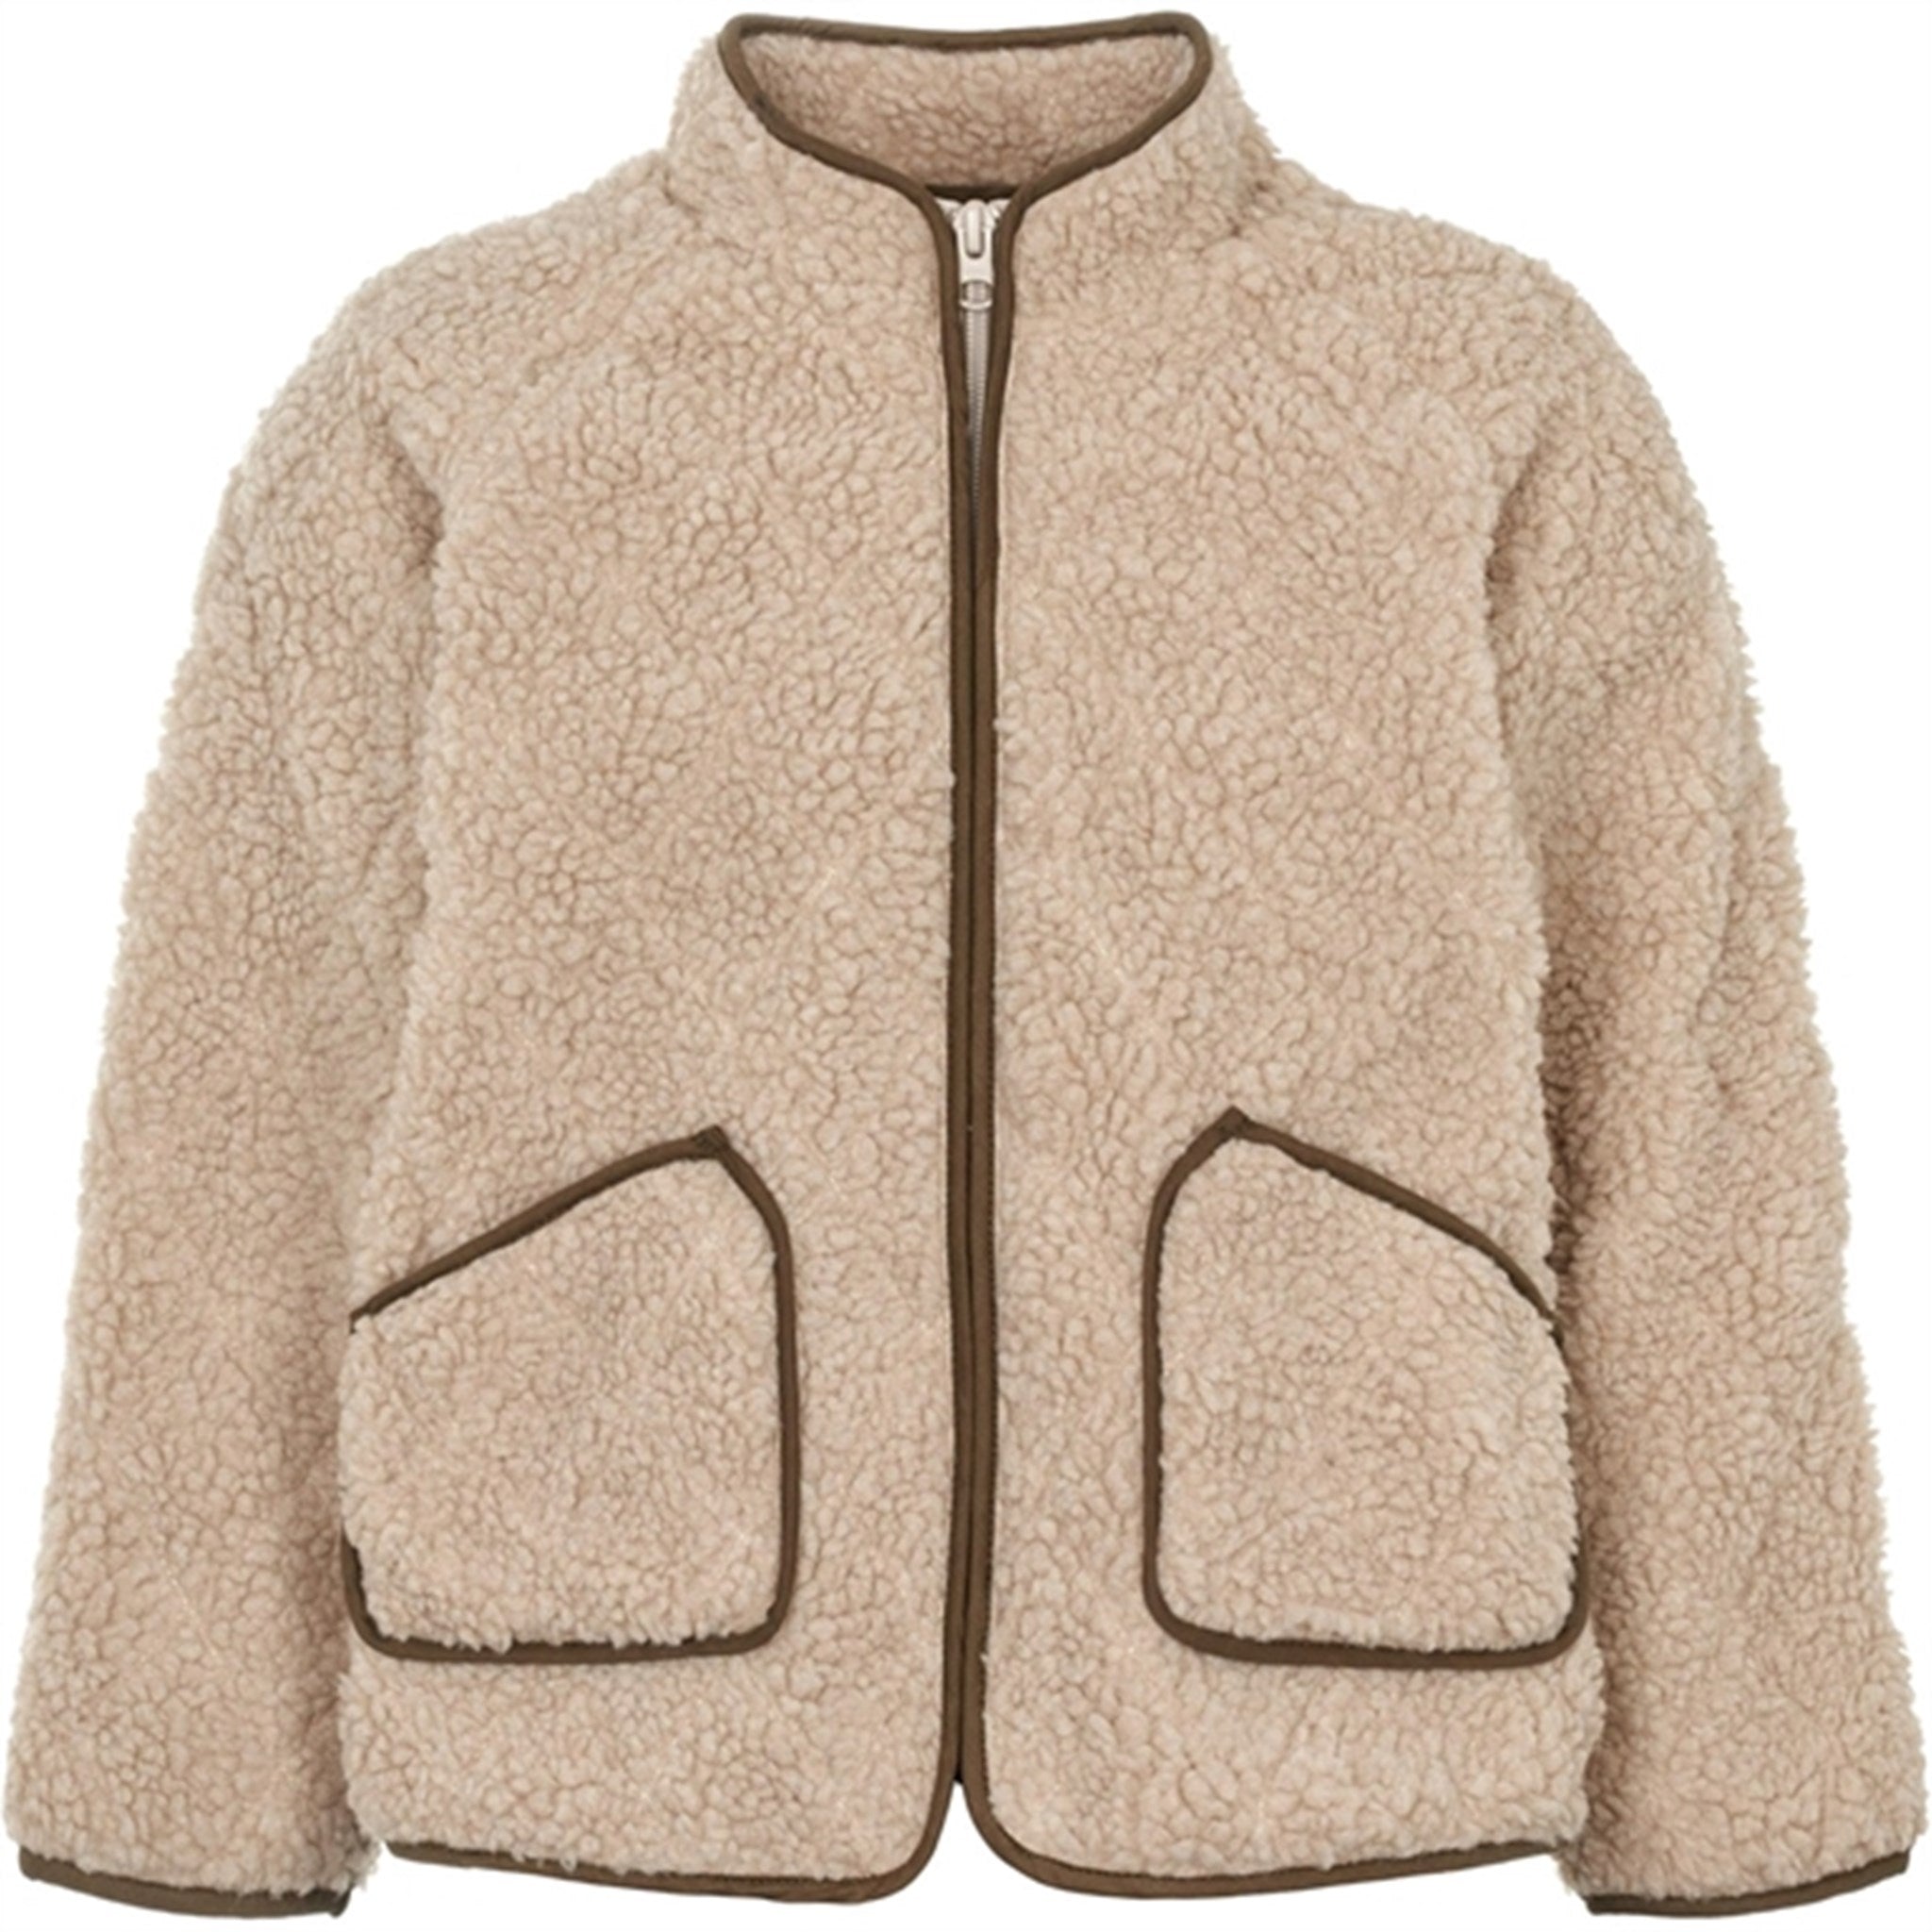 MarMar Jerry Teddybear Fleece Jacket Pepple